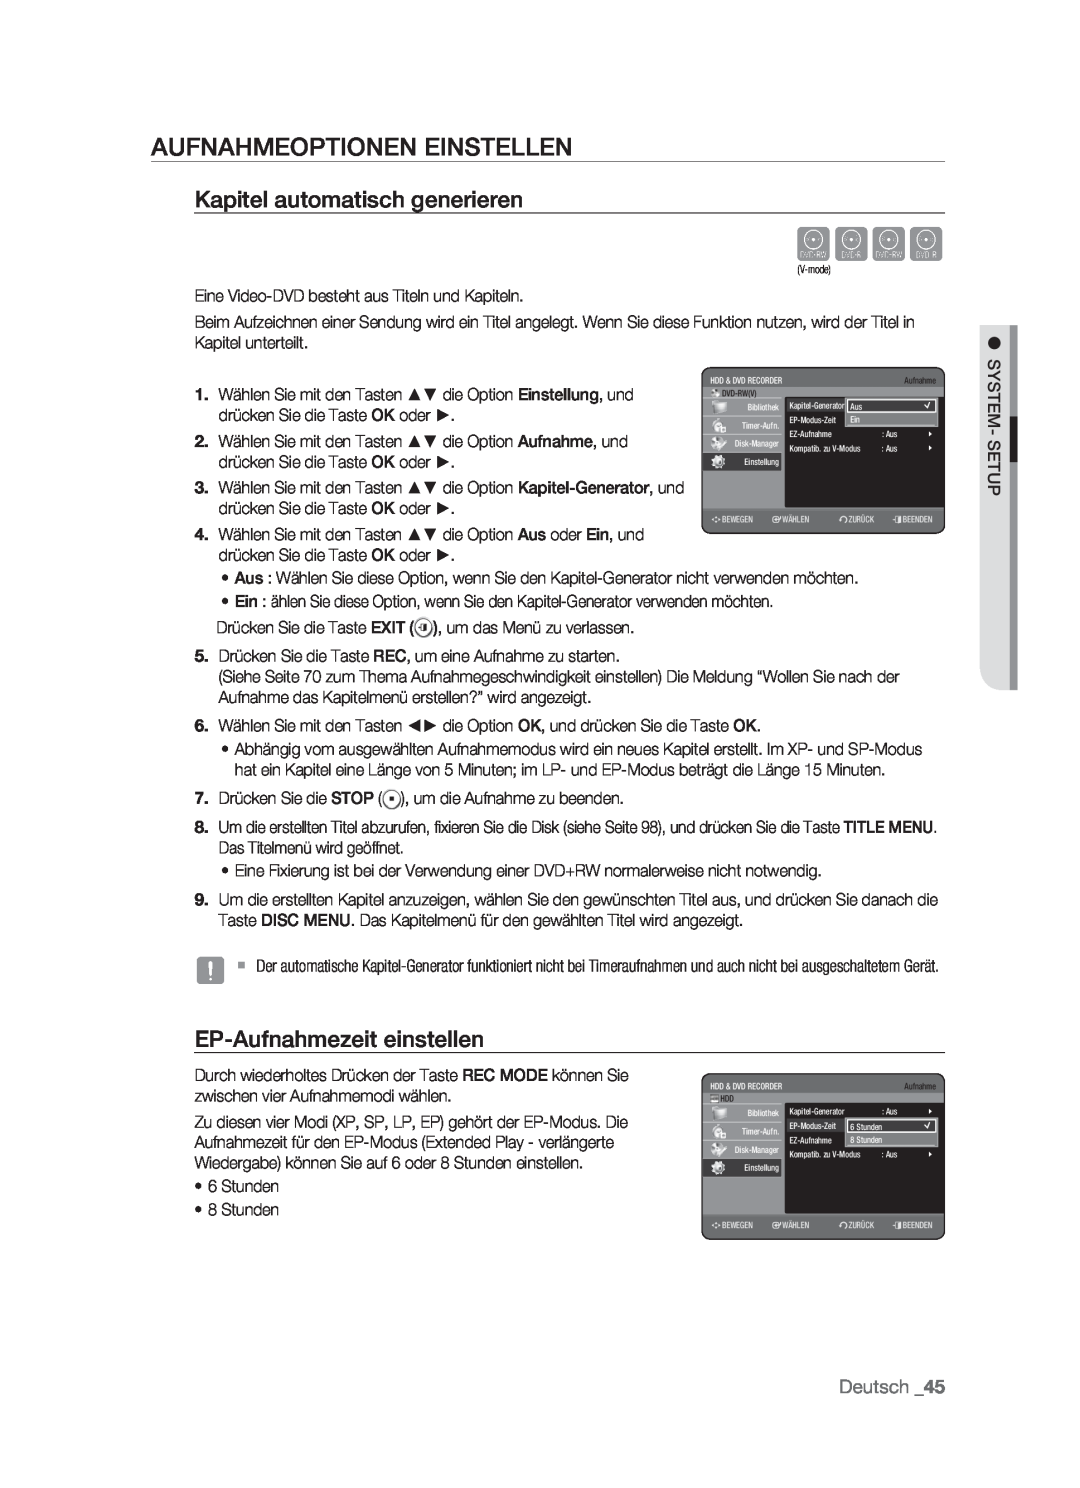 Samsung DVD-HR773/XEB manual Cvkl, Aufnahmeoptionen Einstellen, Kapitel automatisch generieren, EP-Aufnahmezeit einstellen 